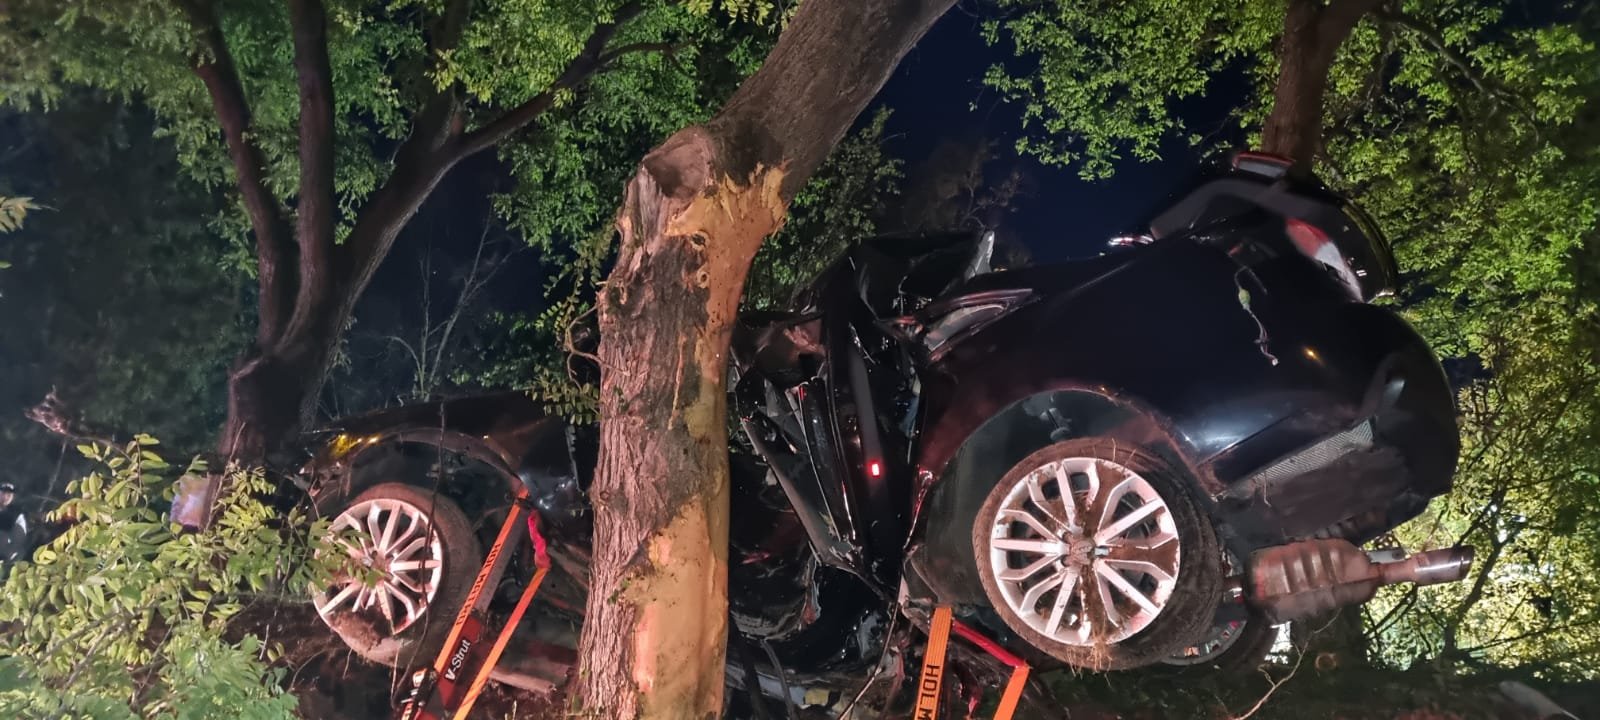  FOTO: Doi tineri, de 22 şi 23 de ani, au fost striviţi după ce au izbit cu maşina un copac